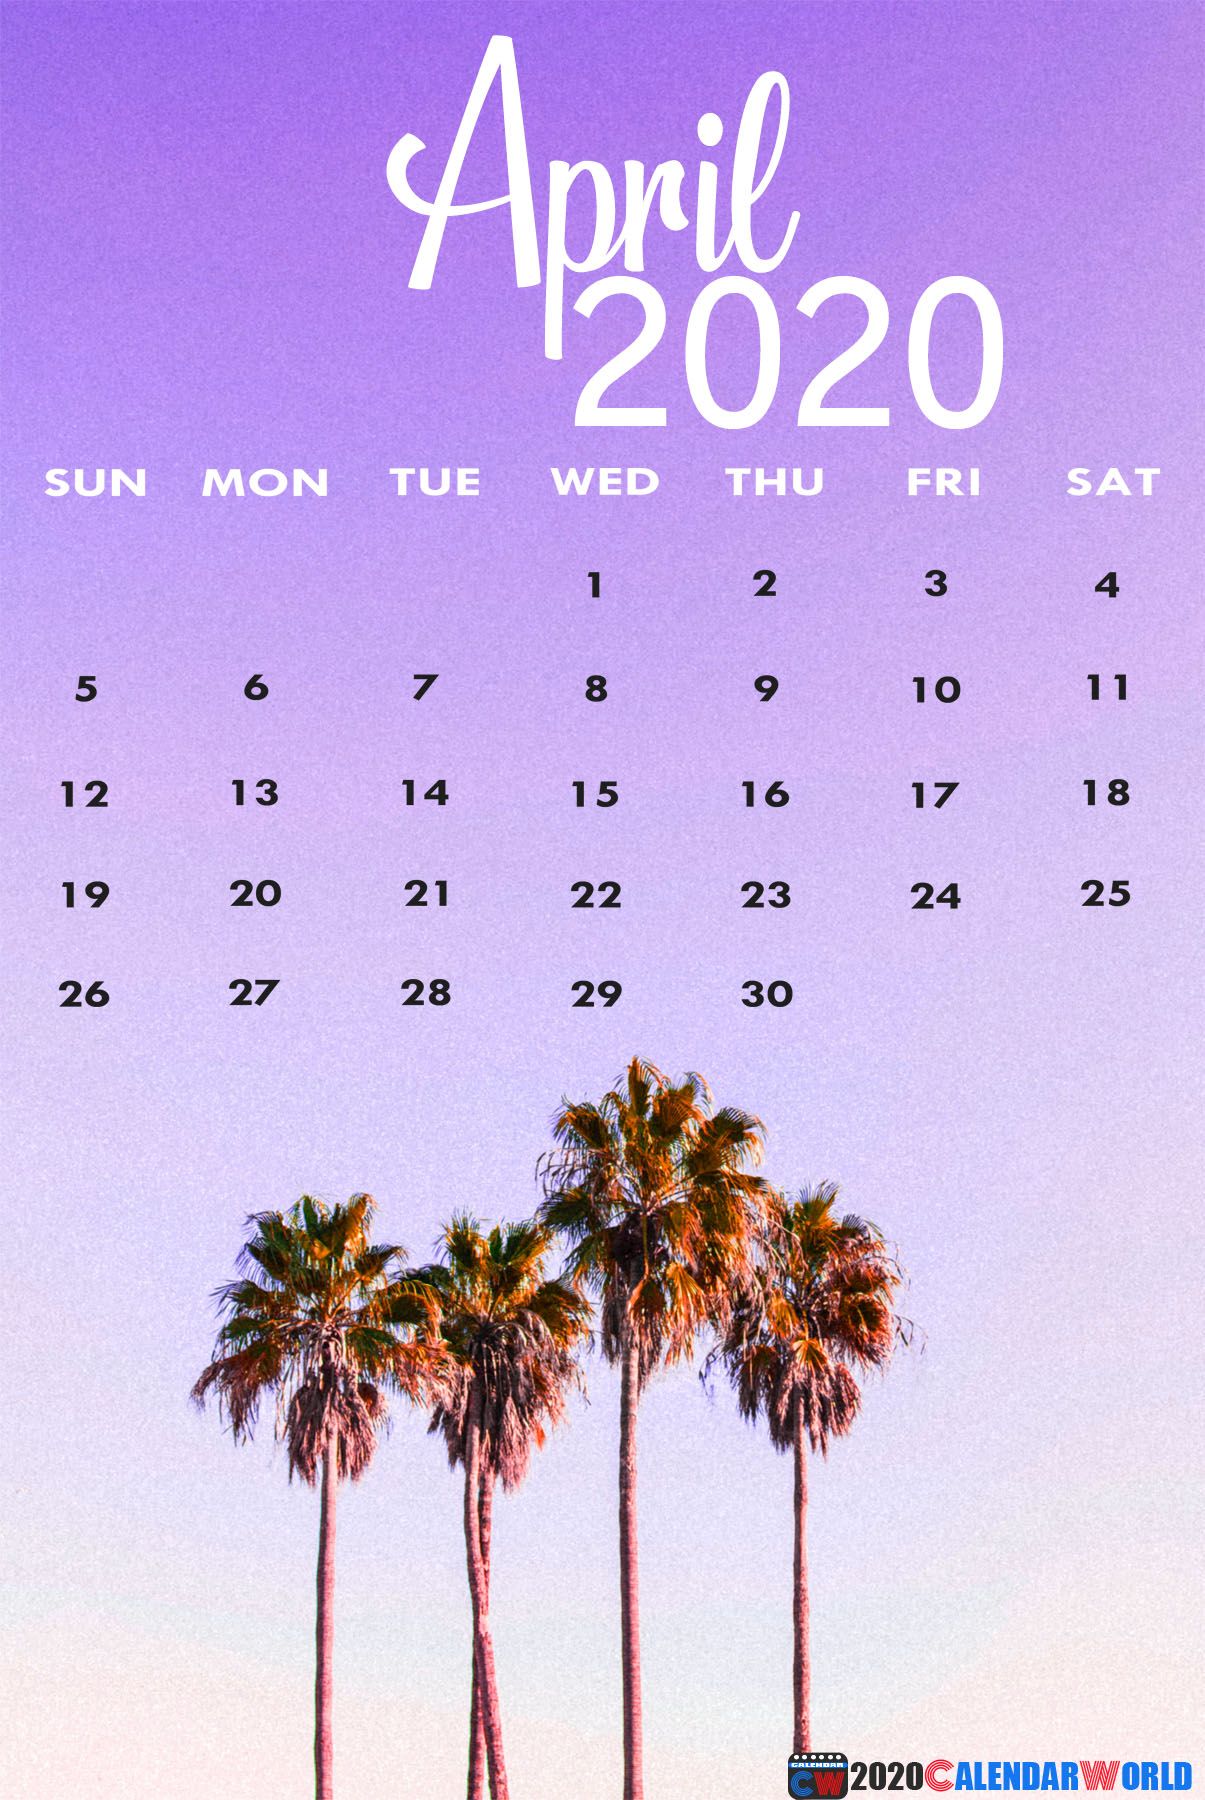 April 2020 Calendar Wallpaper for Desktop, iPhone, Mobile & Tablets